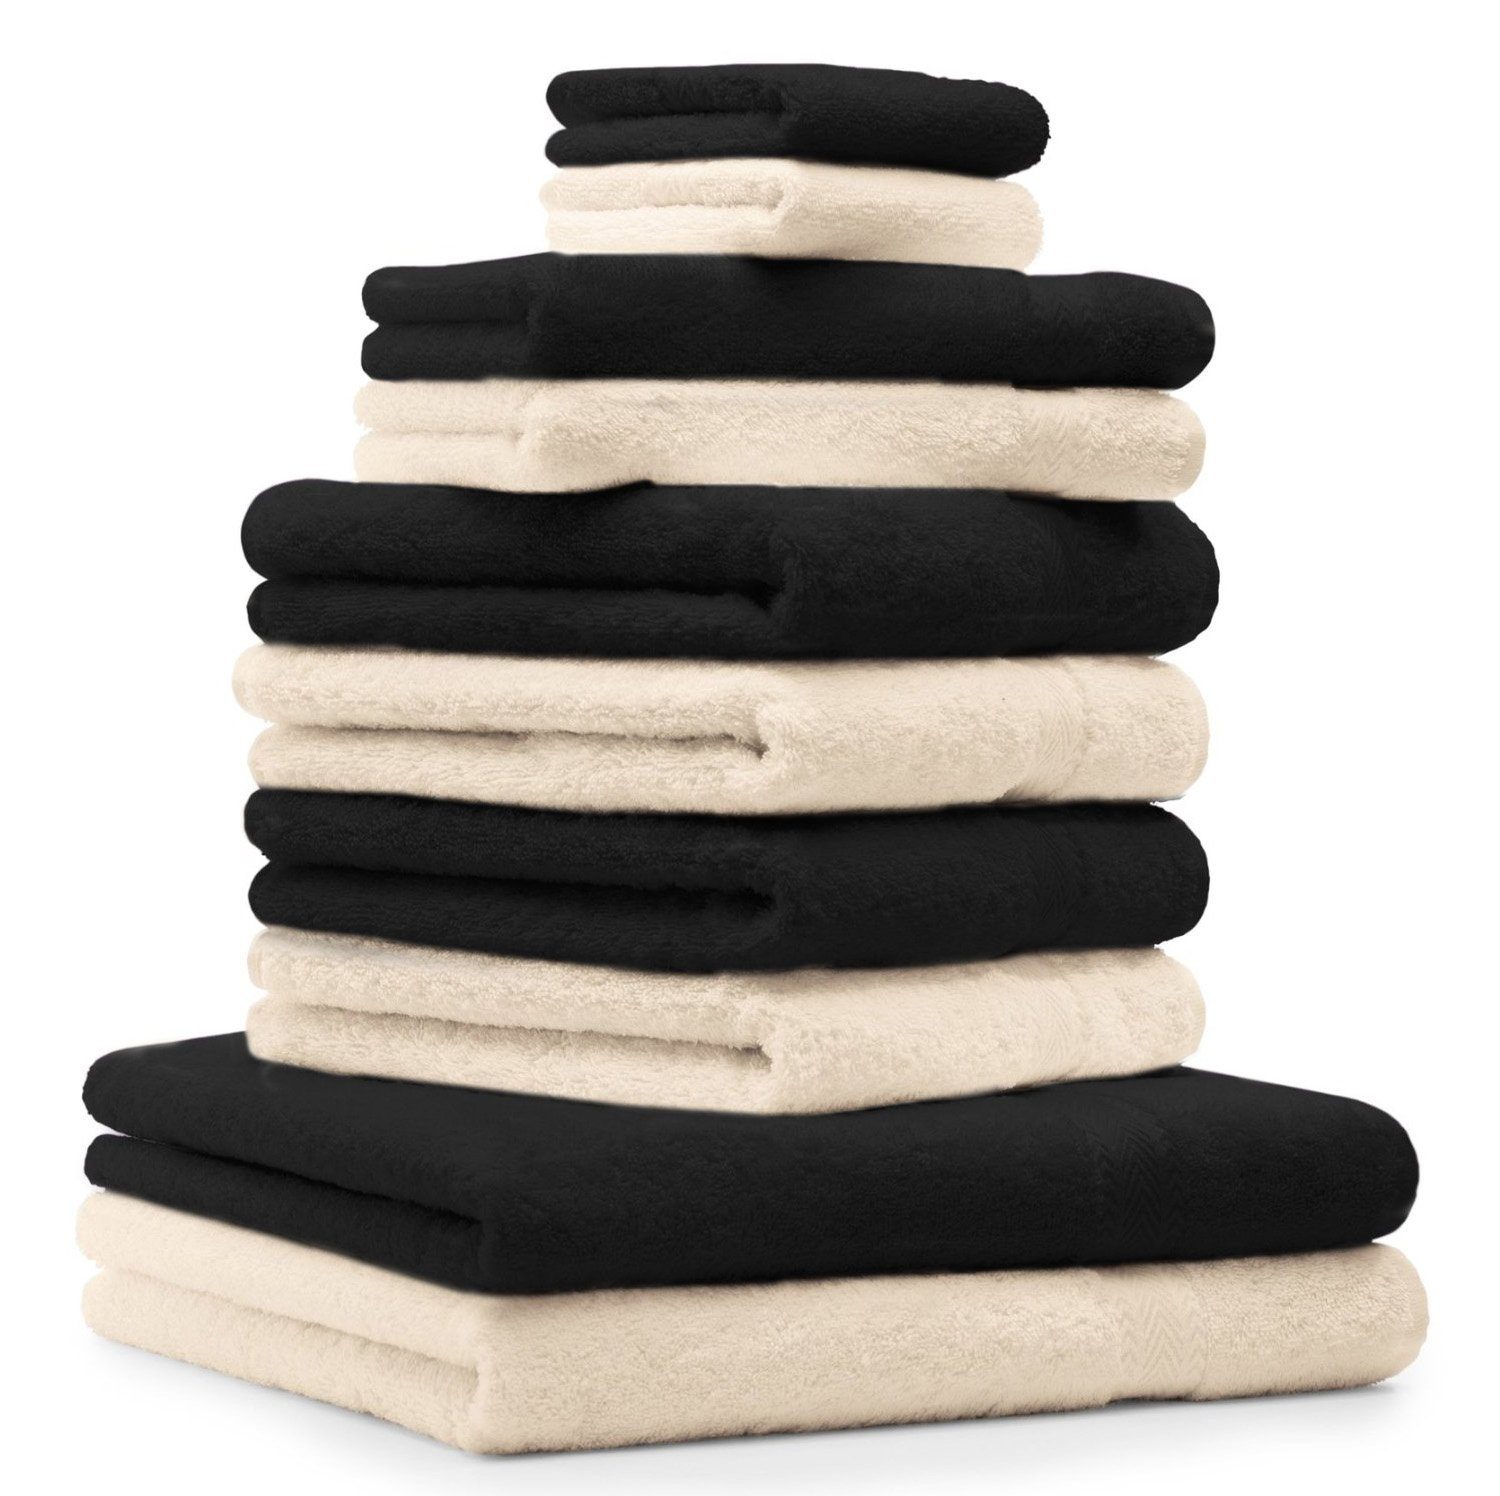 Betz Handtuch Set 10-TLG. Handtuch-Set Premium Farbe Schwarz & Beige, 100% Baumwolle, (10-tlg)